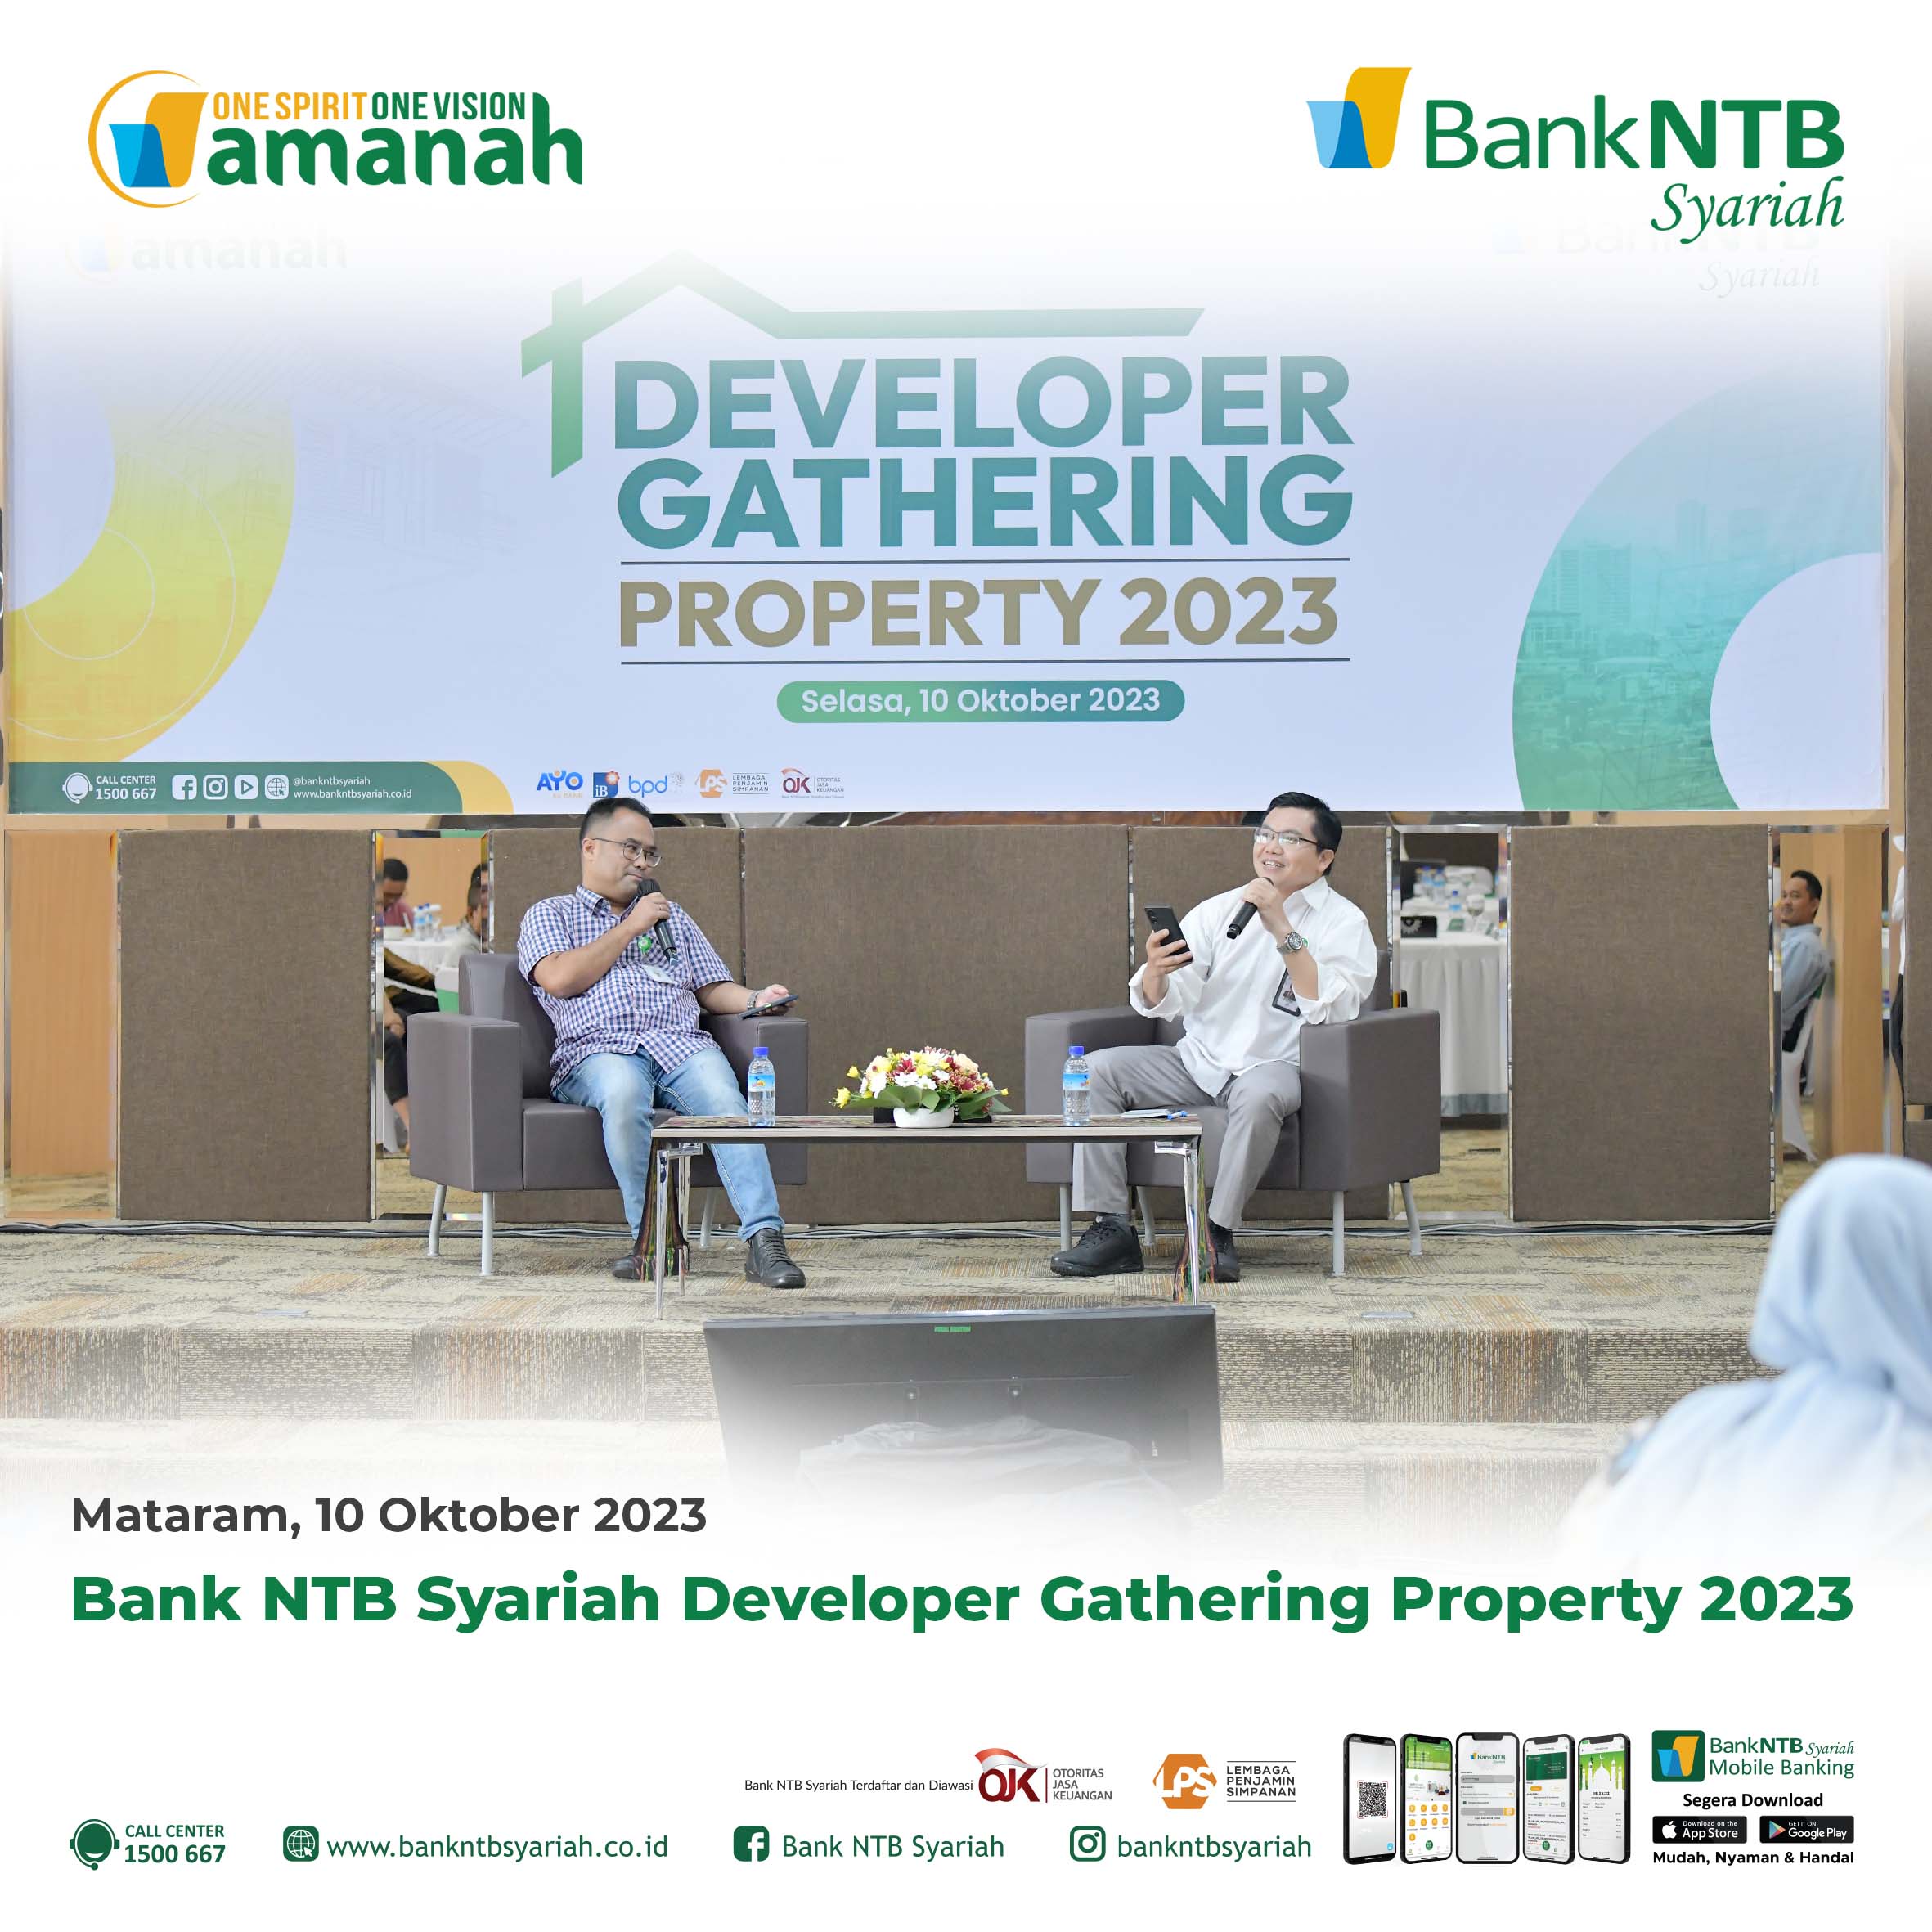 Bank-NTB-Syariah-Developer-Gathering-Property-2023.html